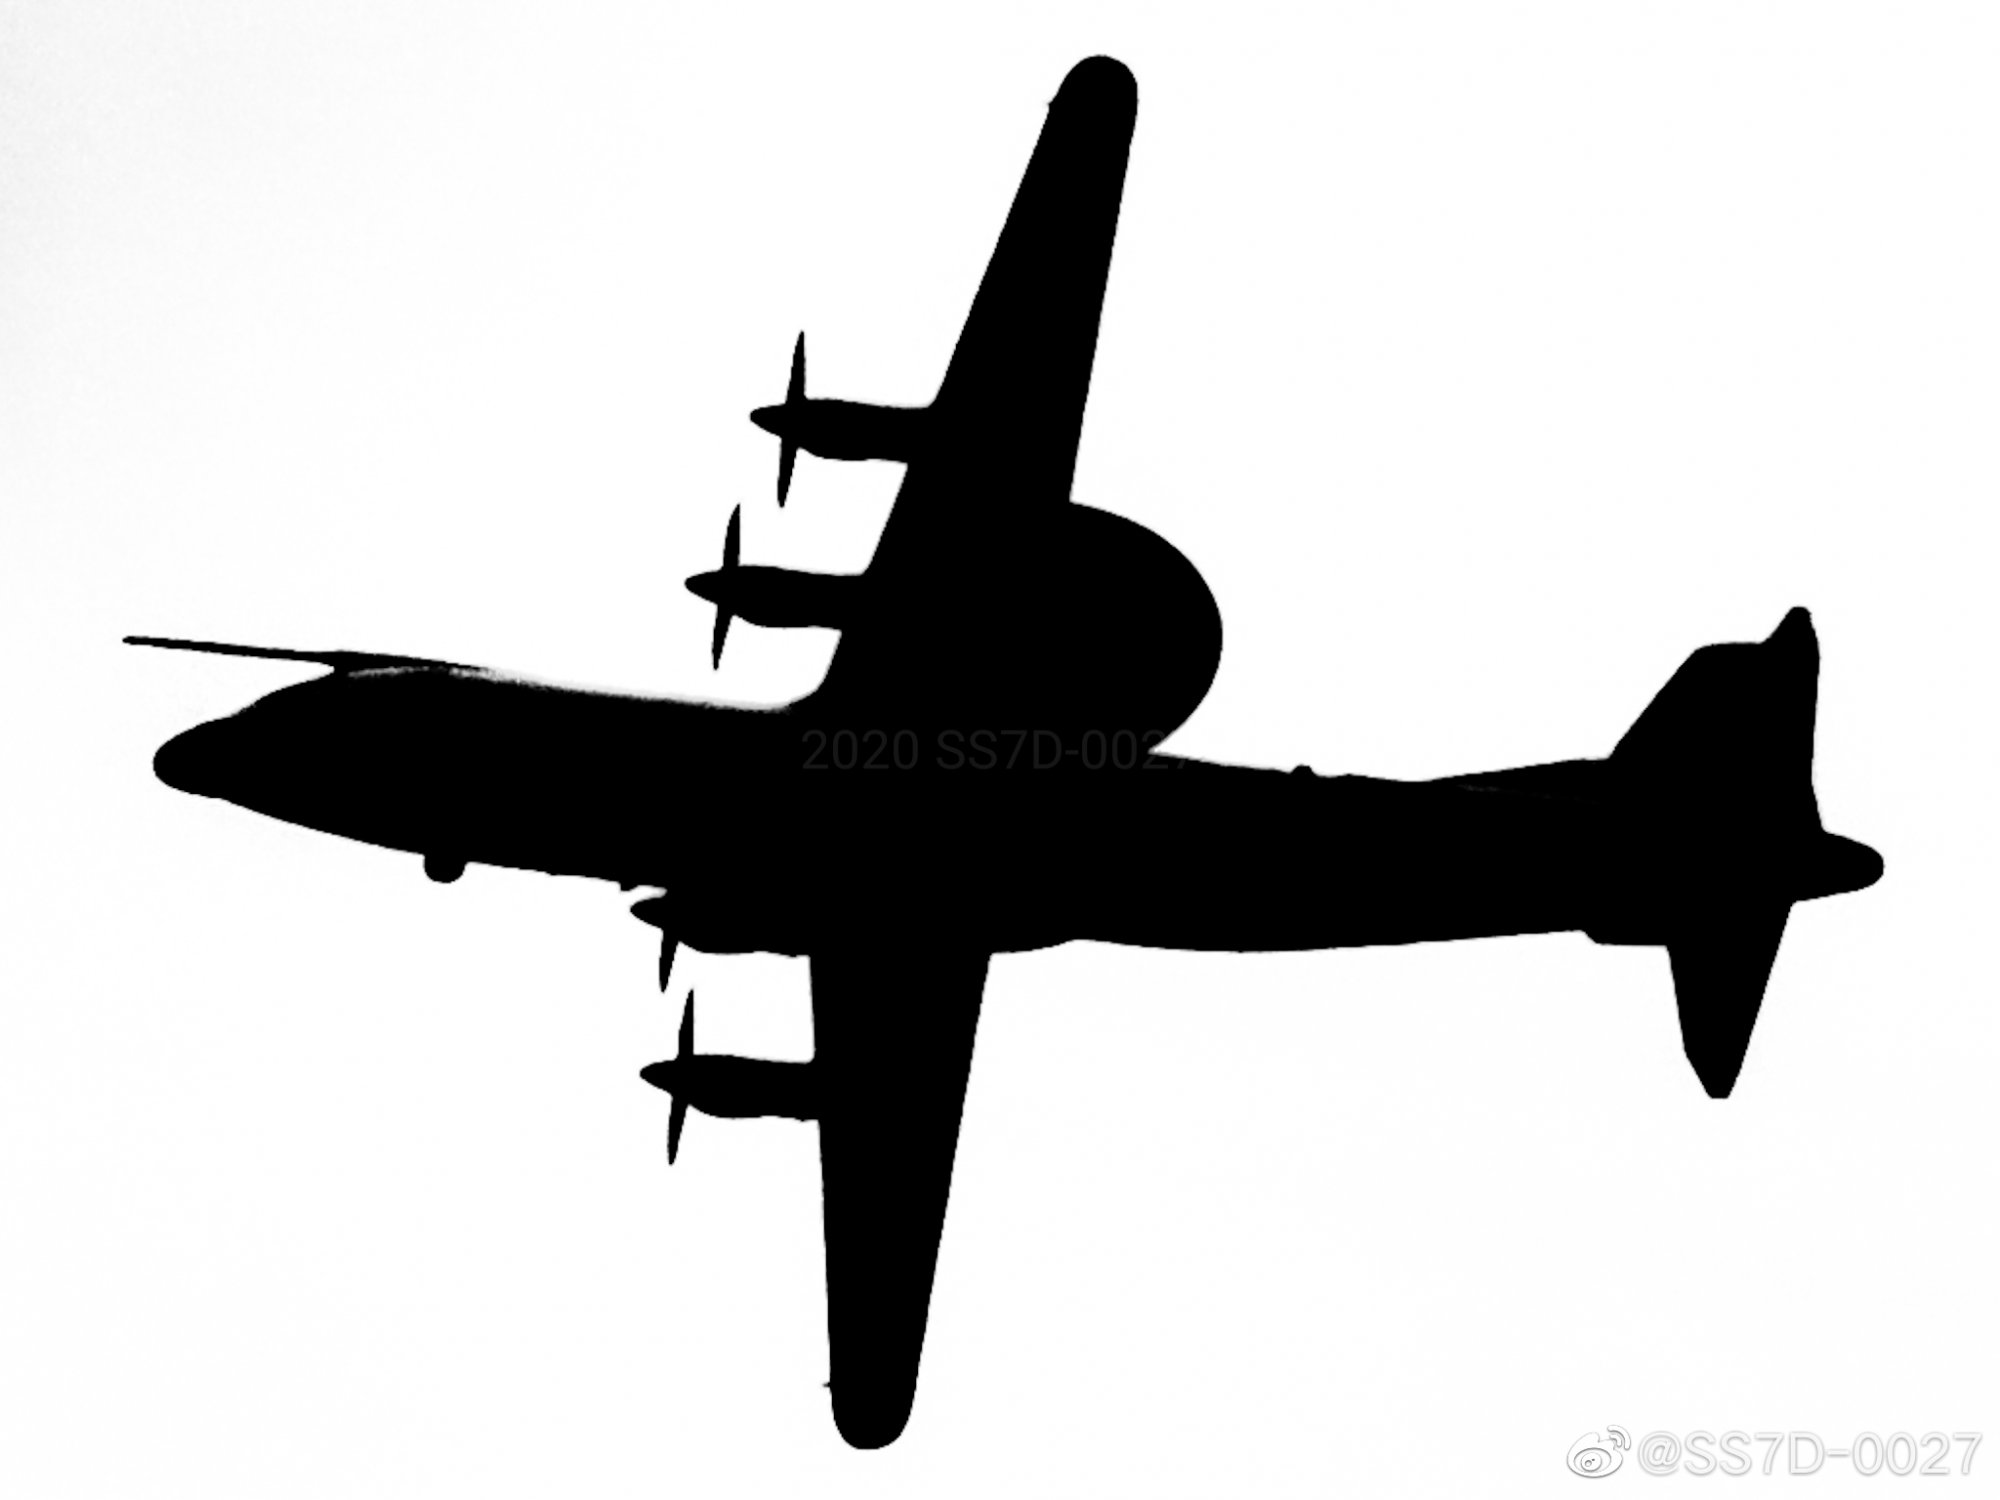 KJ-500A in flight.jpg